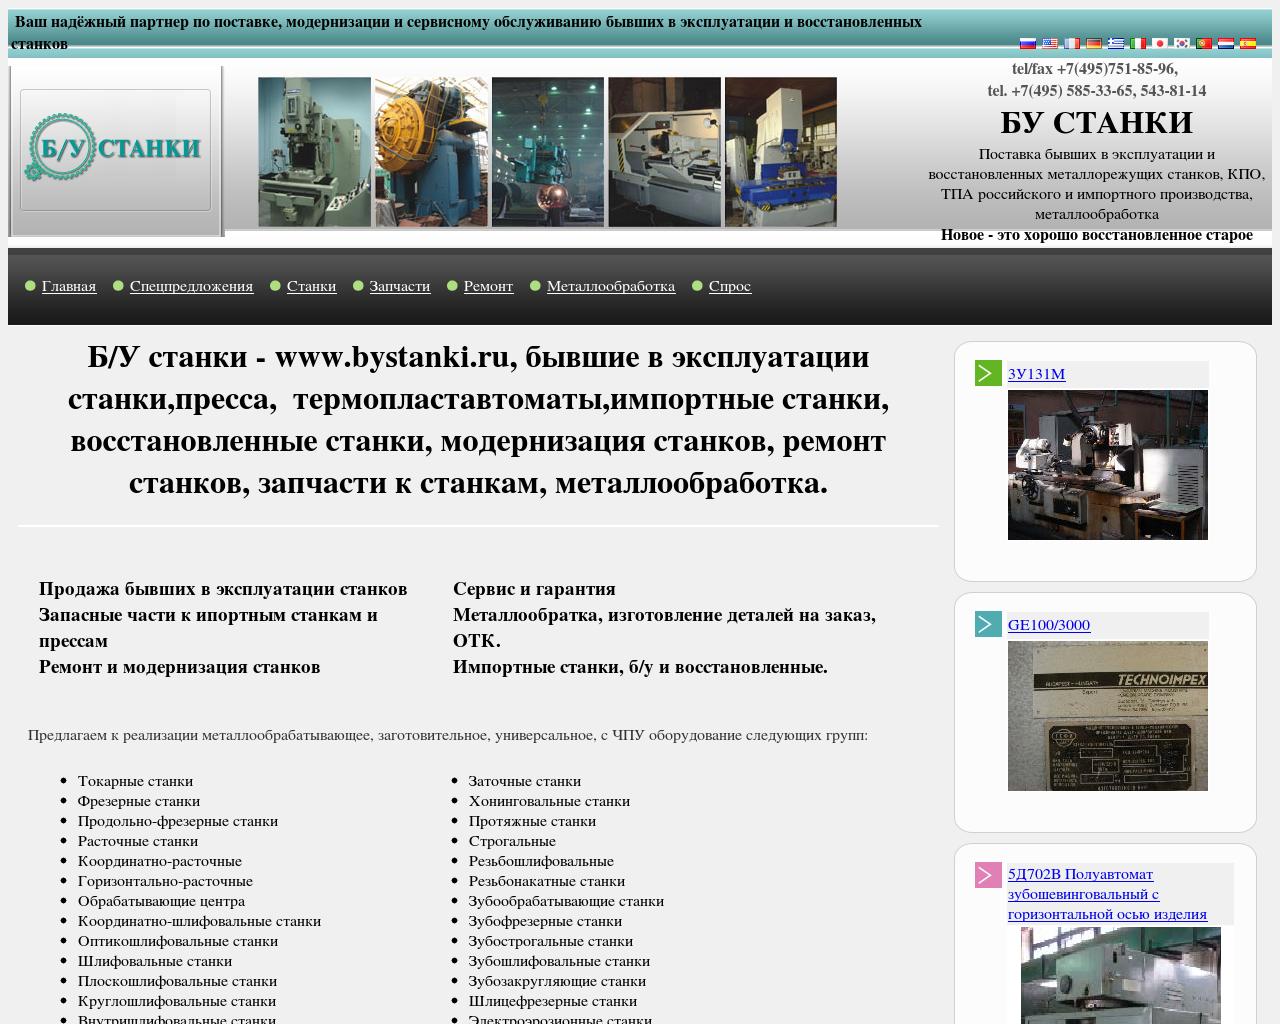 Изображение сайта bustanok.ru в разрешении 1280x1024